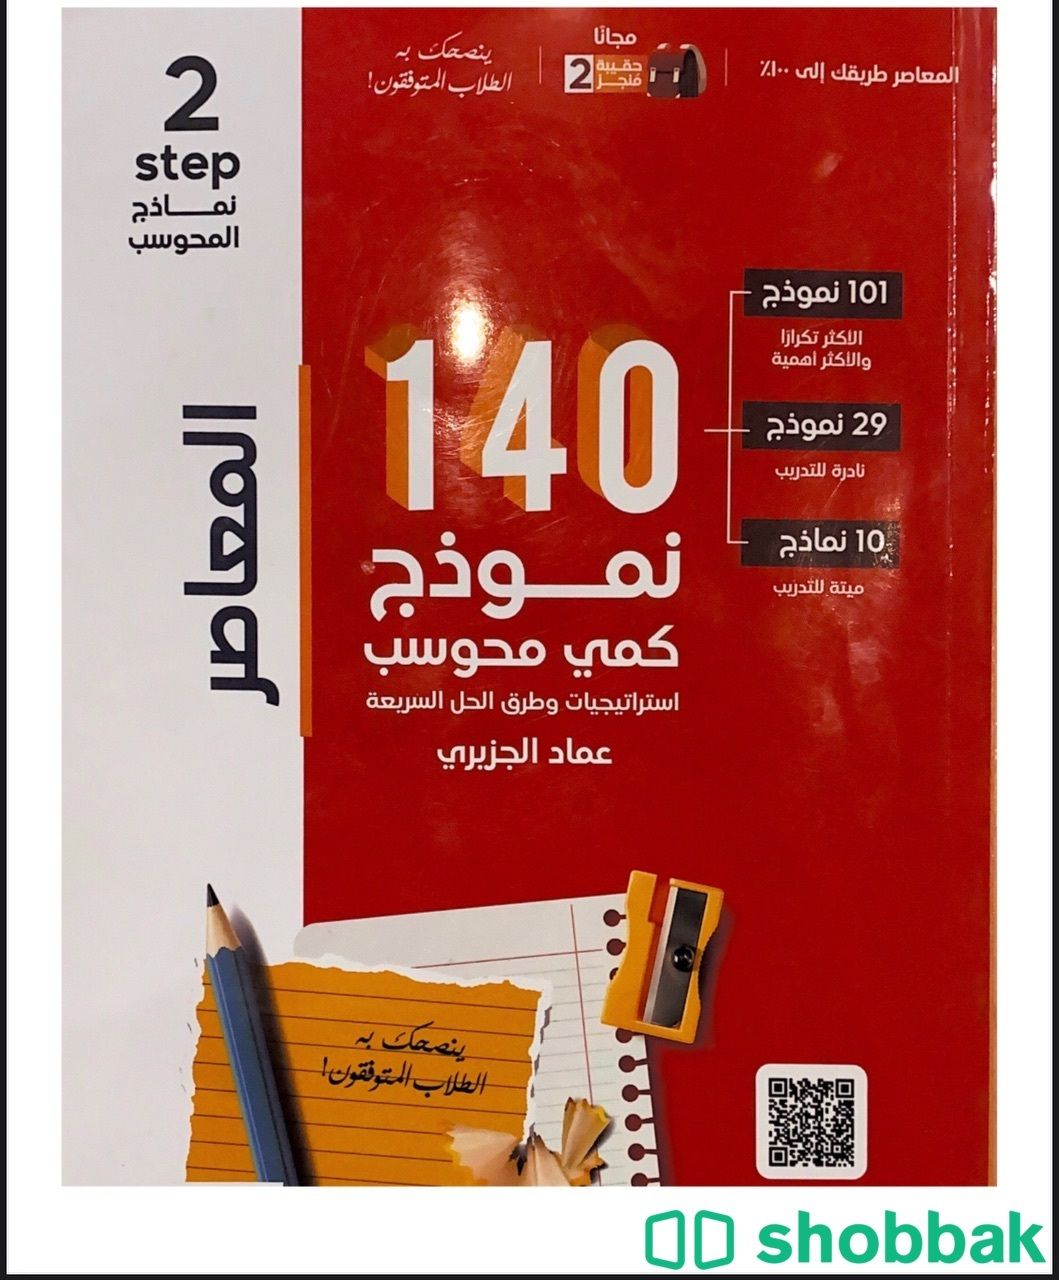 كتاب معاصر 7 و 120 و الرسومات والمقارانات3 Shobbak Saudi Arabia